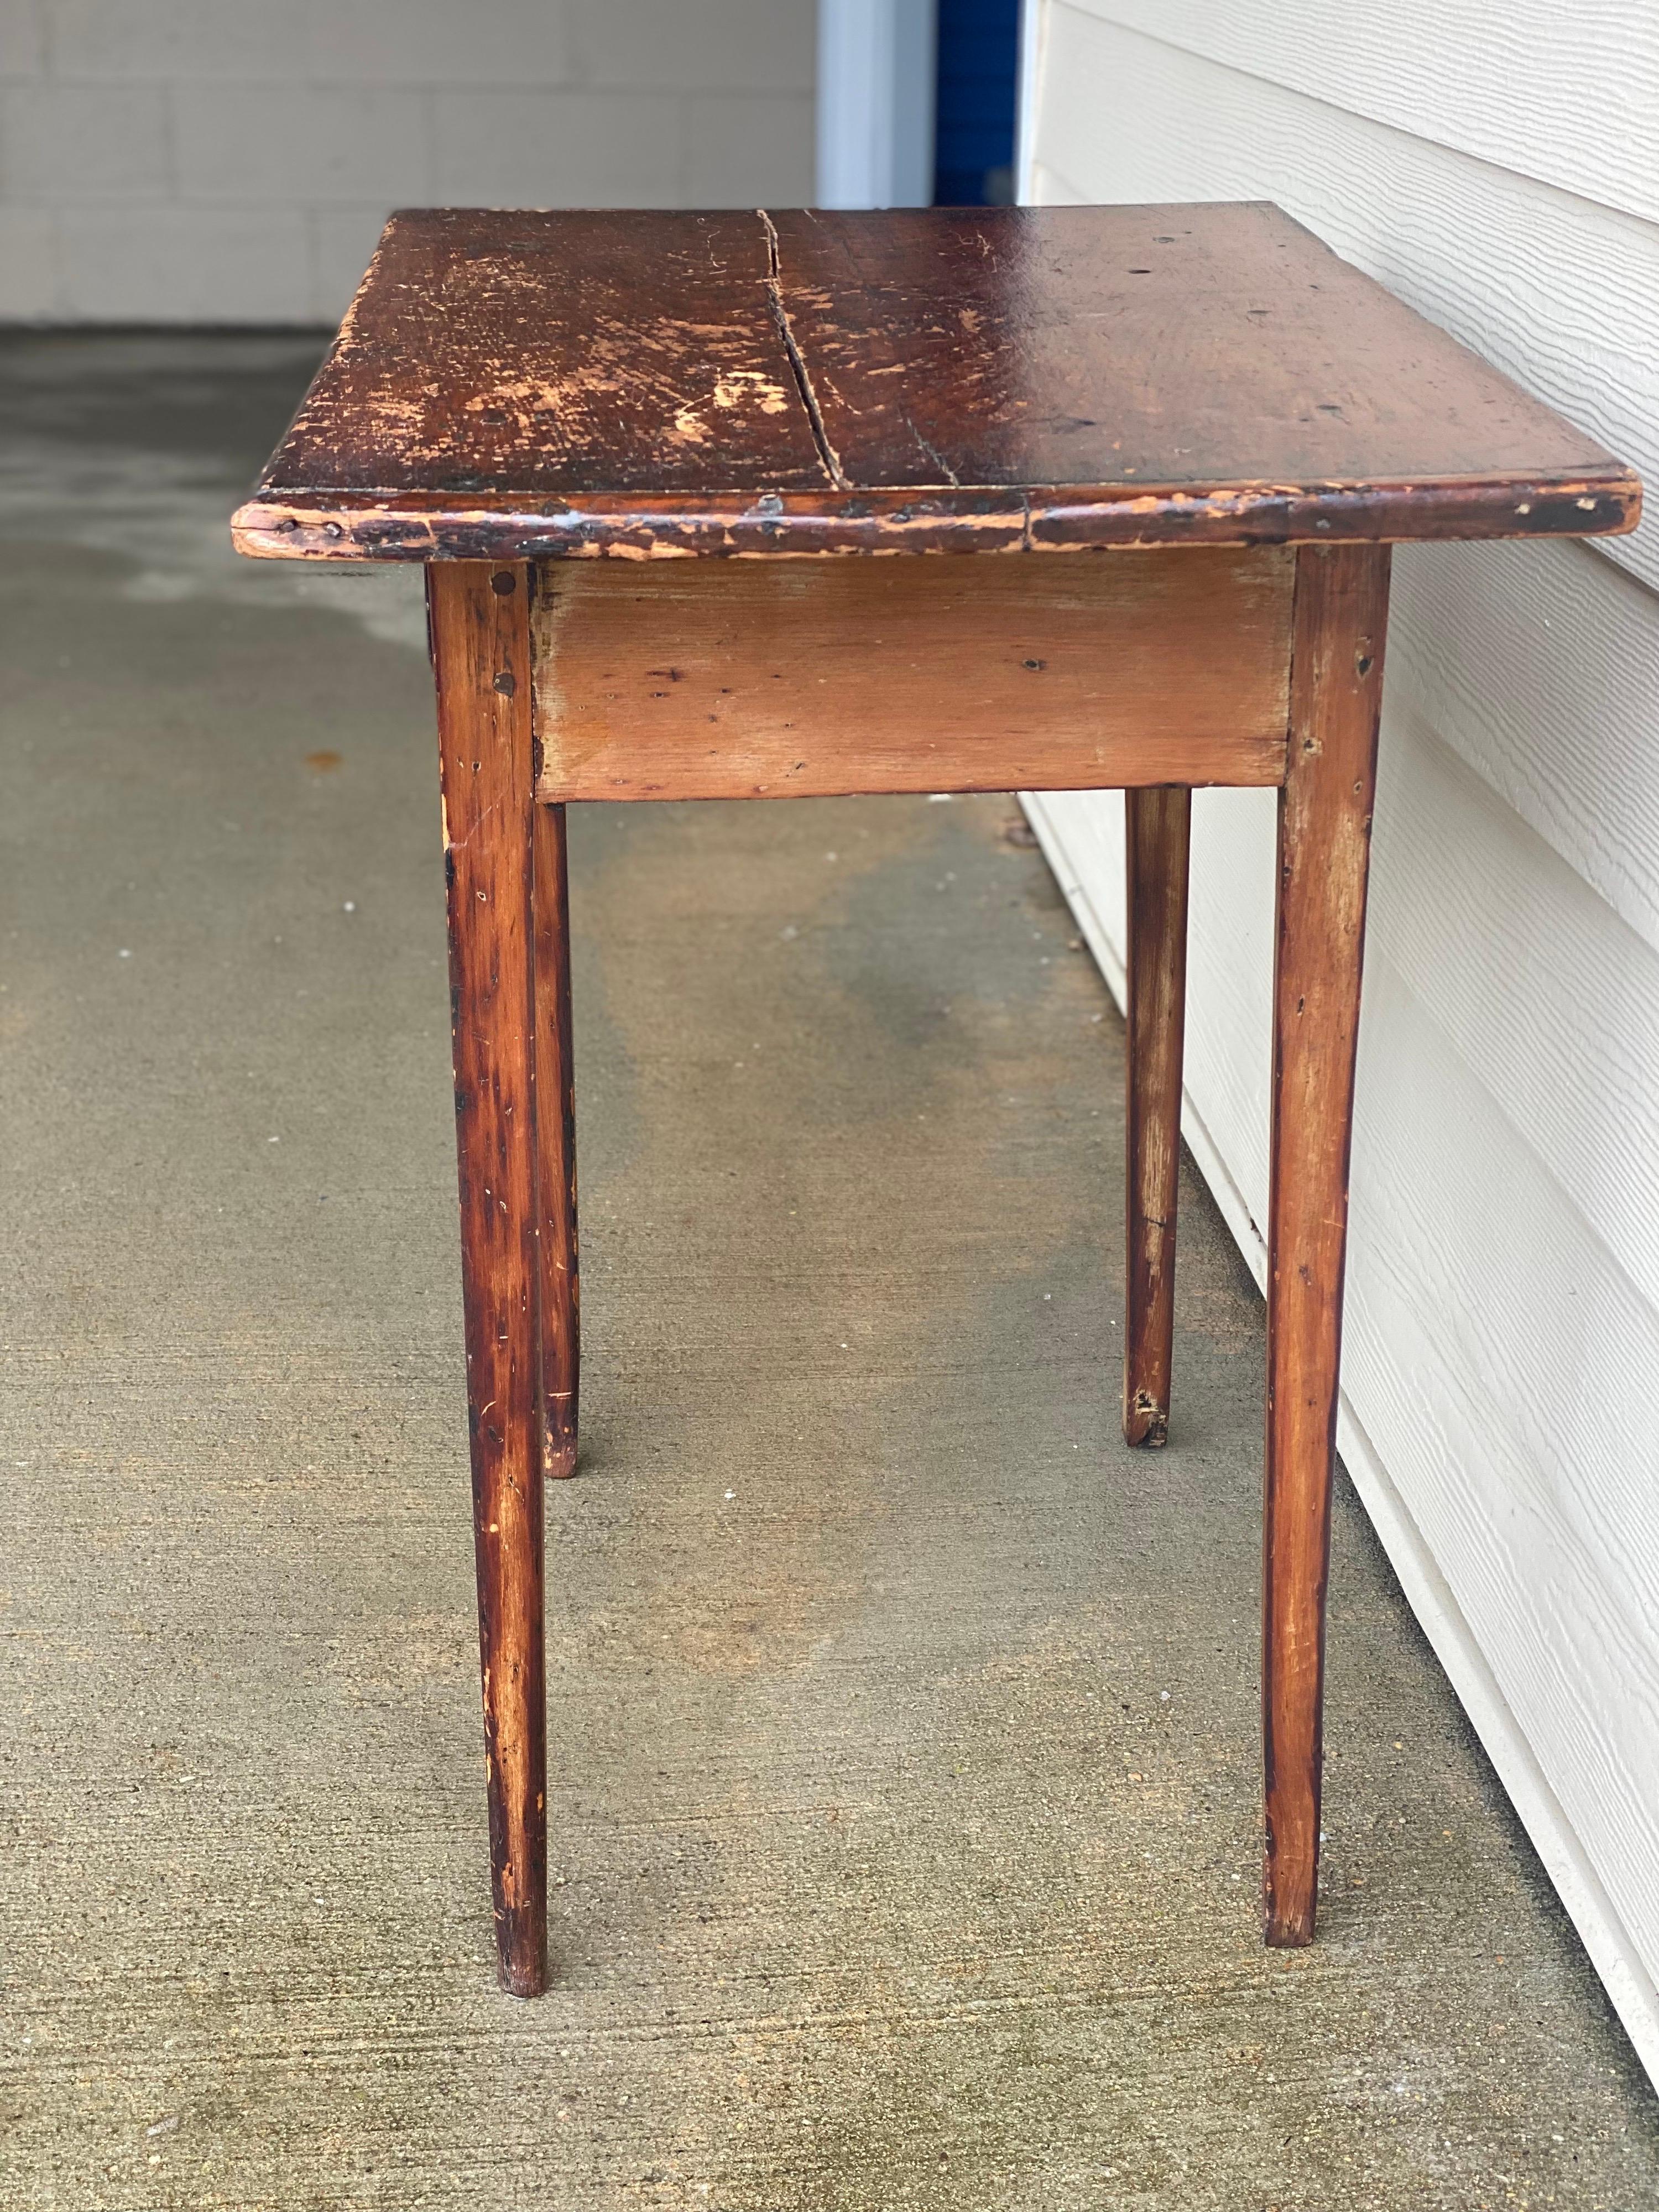 Amerikanischer rustikaler Beistelltisch mit einer Schublade, 20. Jahrhundert.
Charmanter, einfacher, rustikaler Tisch mit klaren Linien, konischen Beinen und einem runden Messingknauf. Einige Trennungen an der Oberseite. Knicke und